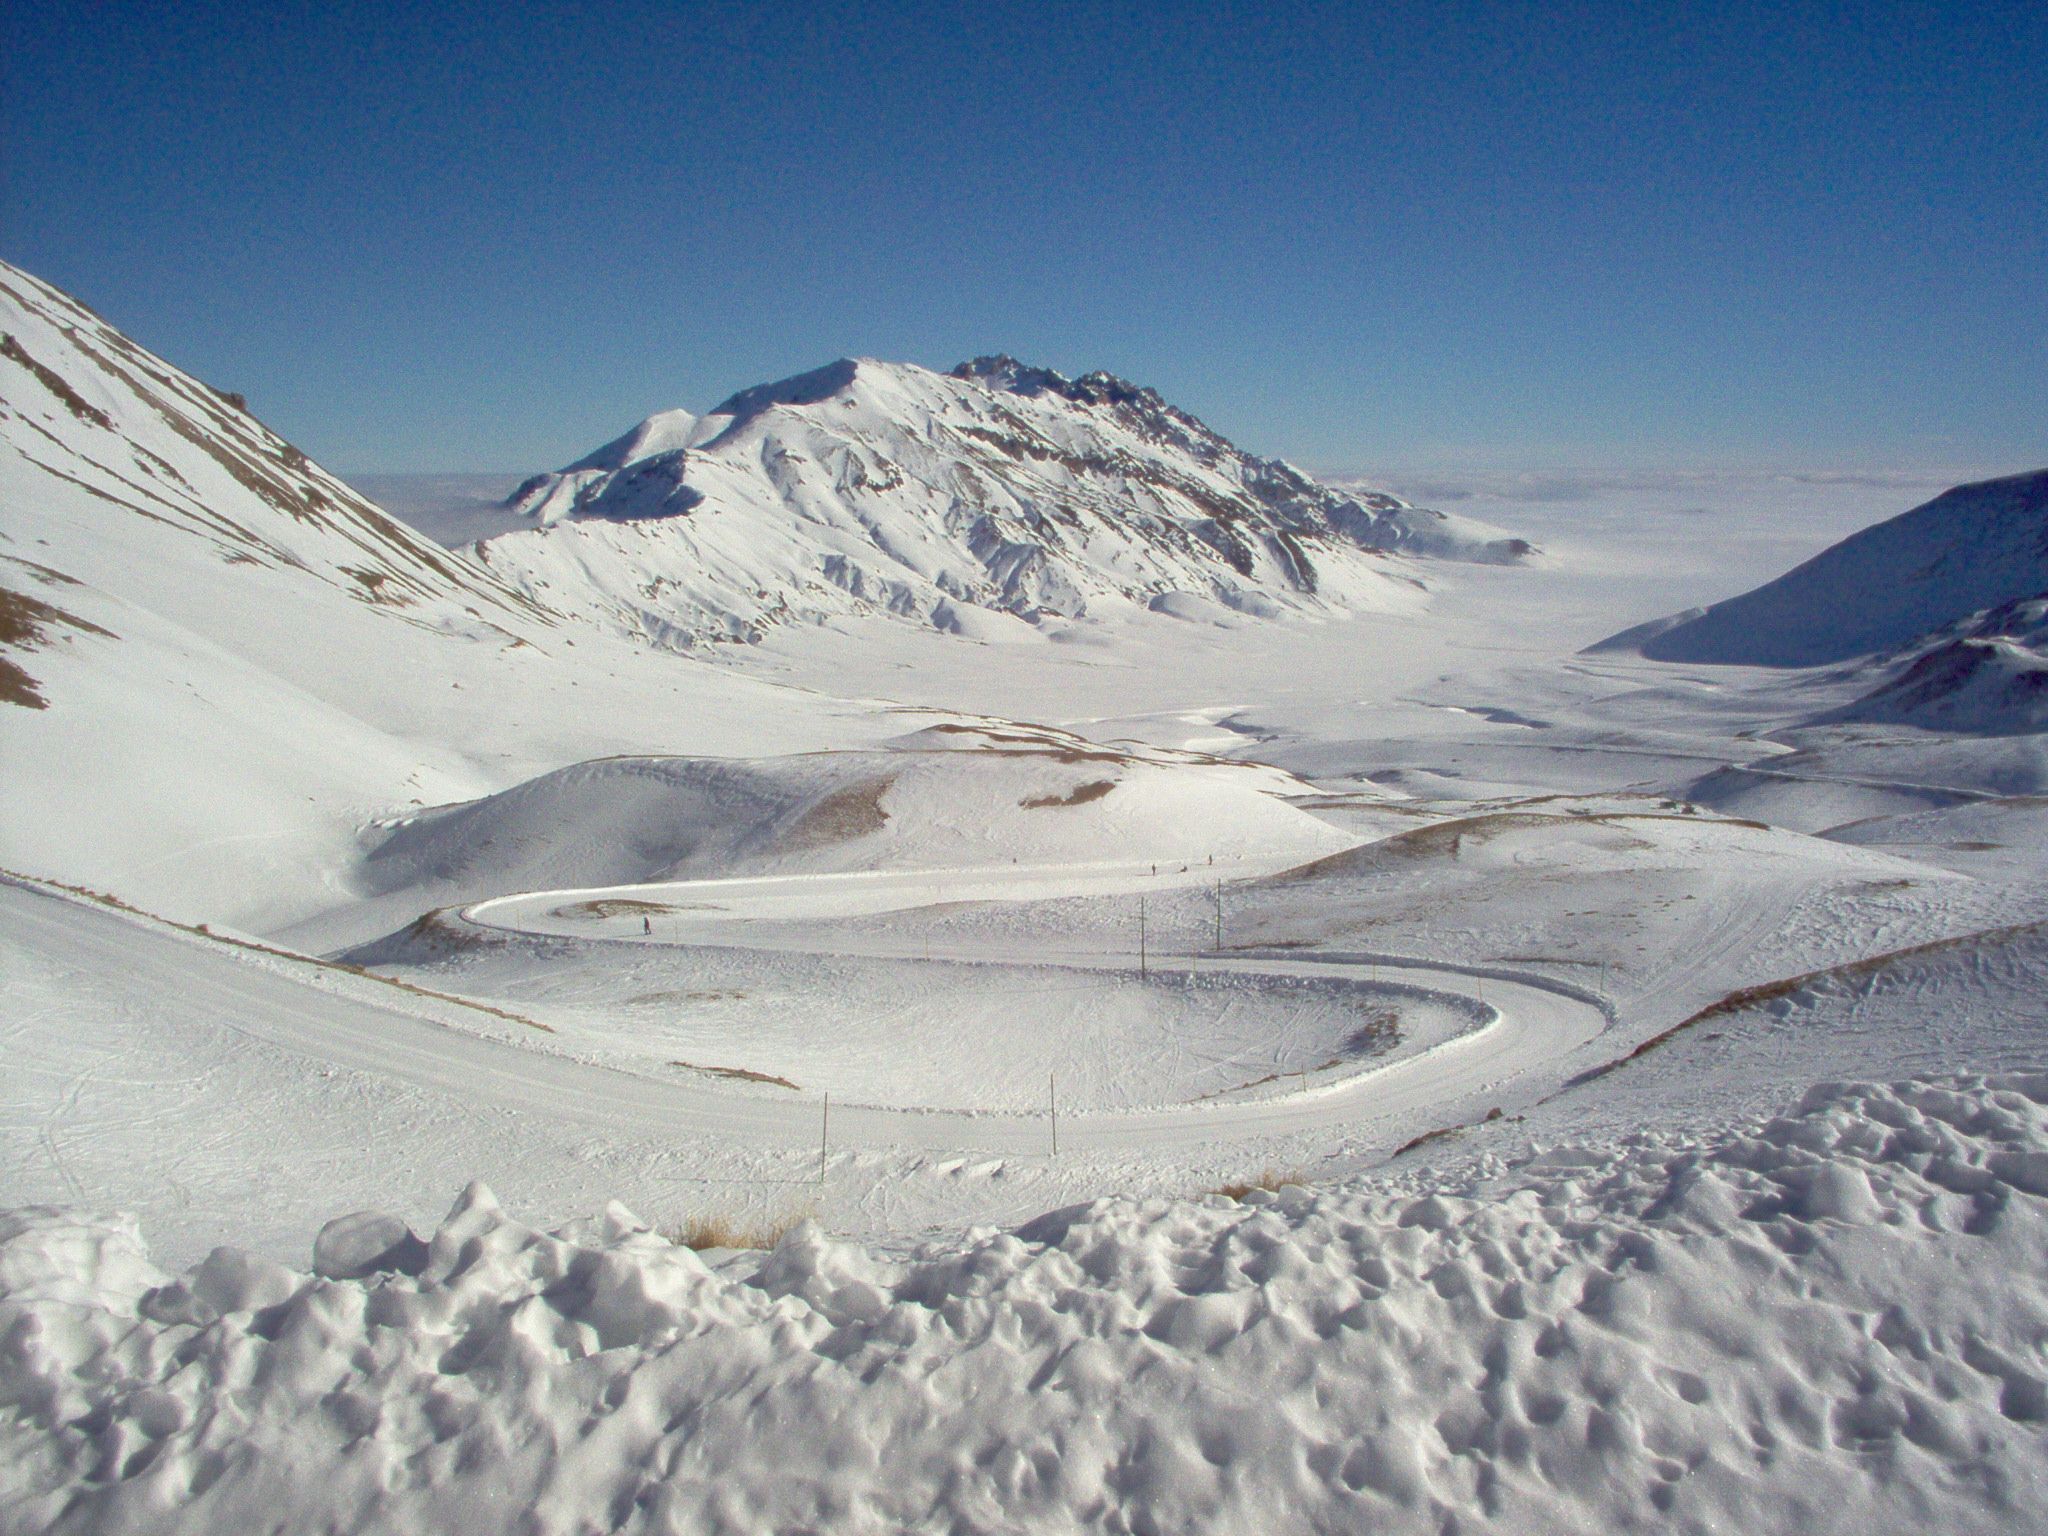 Settimana bianca 2015: dove andare a sciare in Centro Italia?